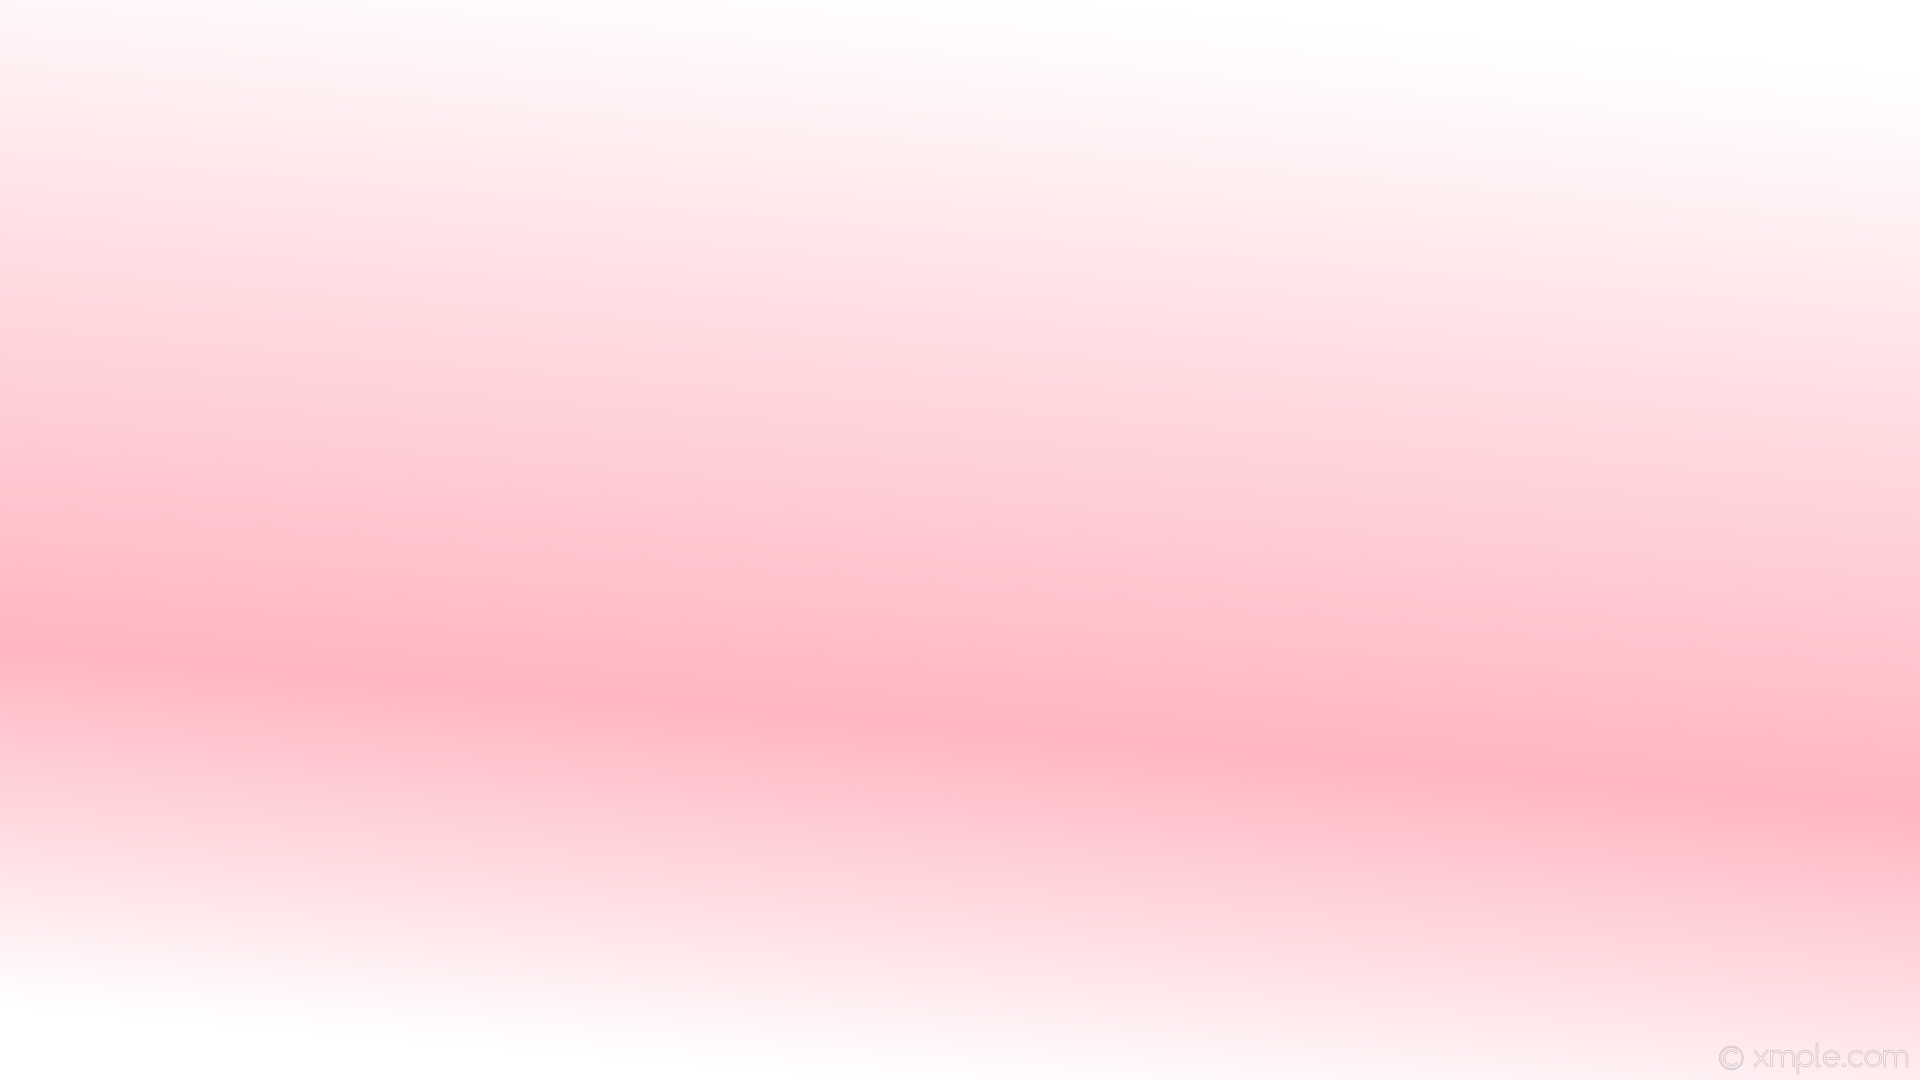 1920x1080 wallpaper pink white gradient highlight linear light pink #ffffff #ffb6c1  255Â° 33%